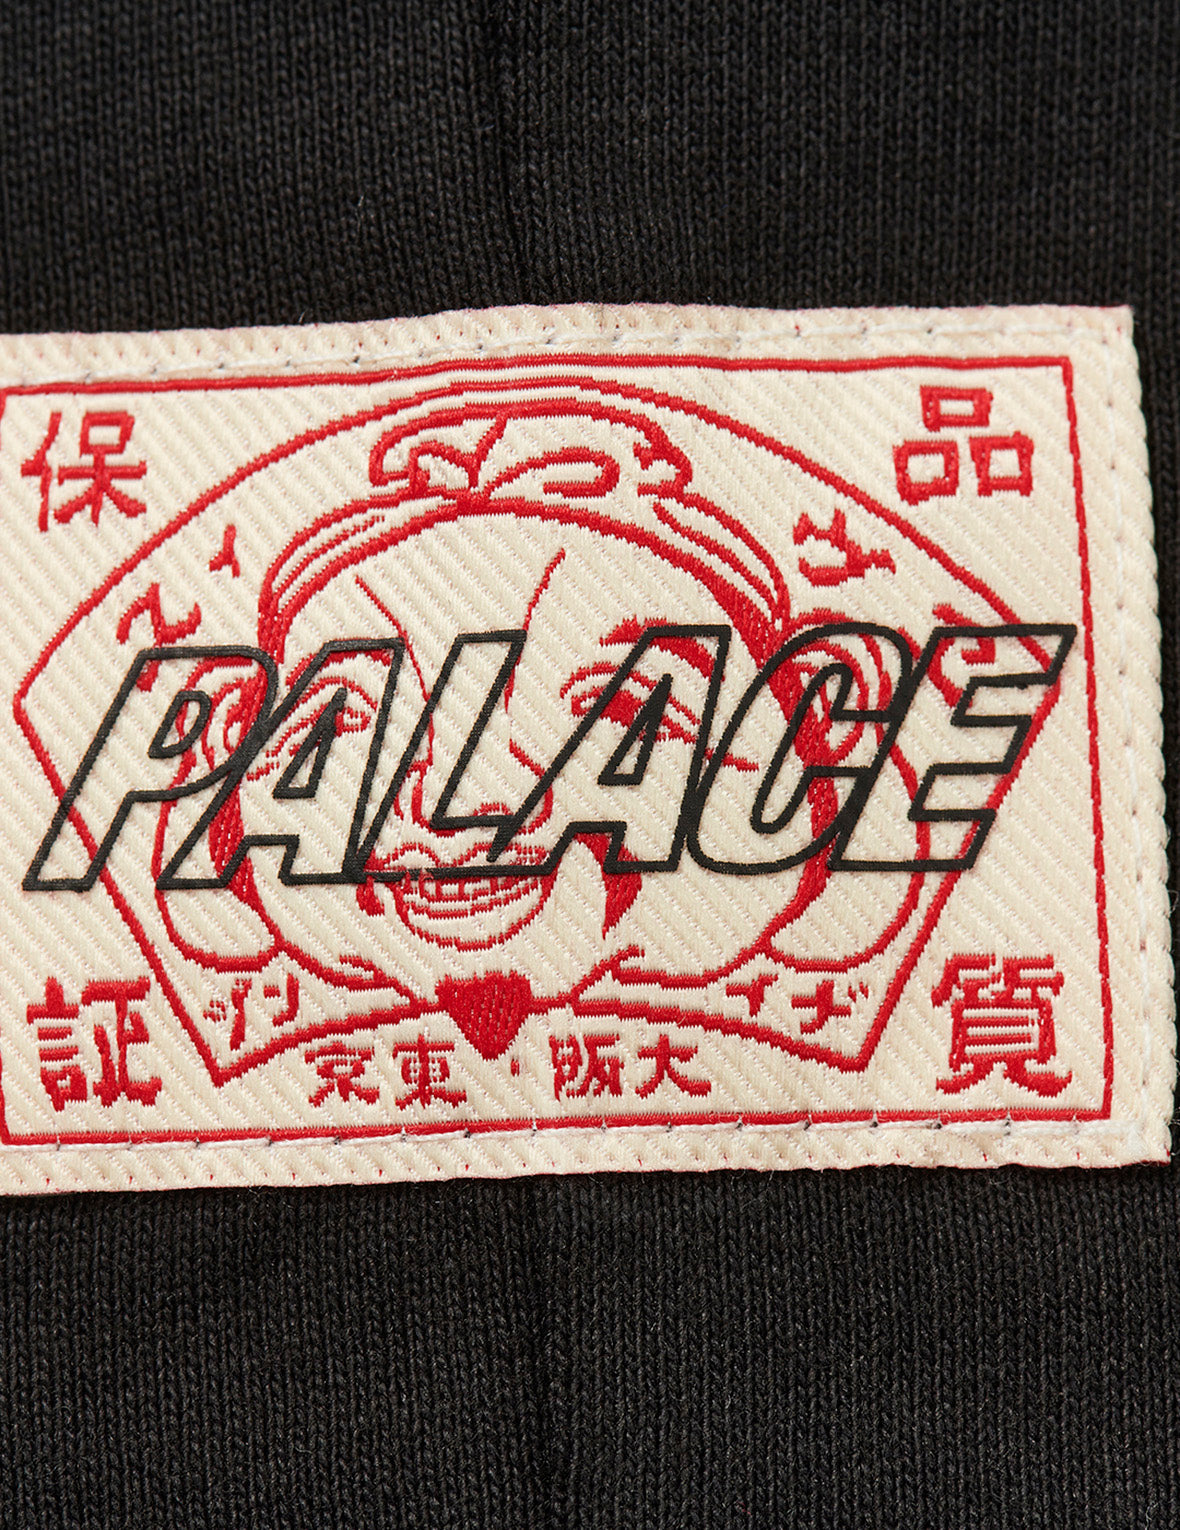 PALACE EVISU Contrasting Logo Print Regular Fit T-shirt